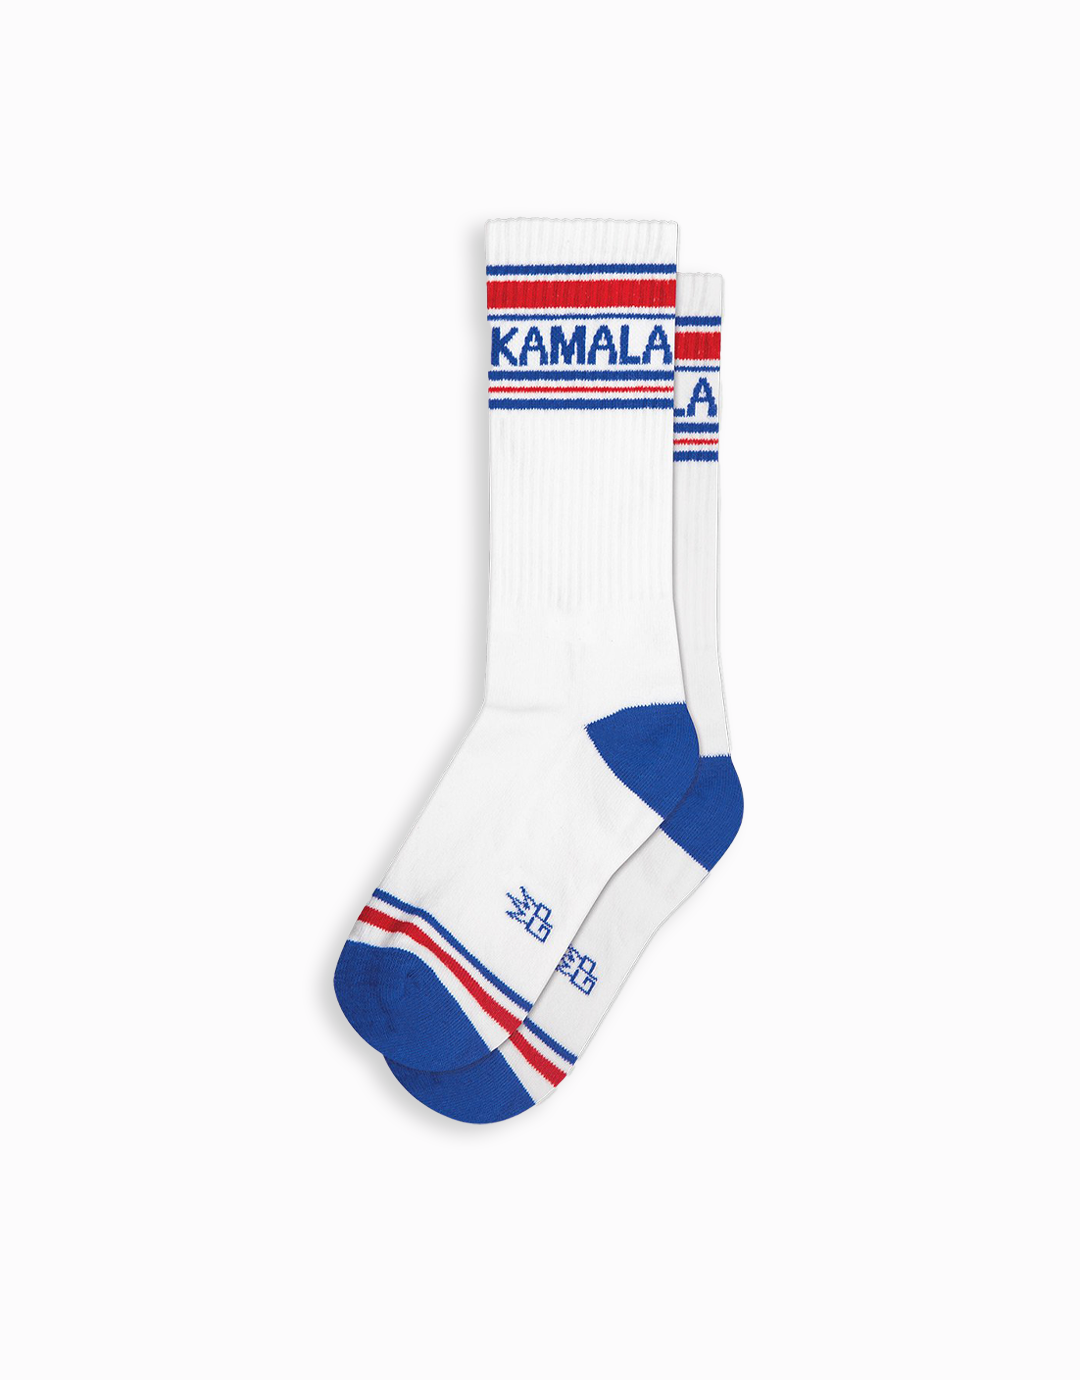 Kamala Gym Socks, Support Civic Engagement